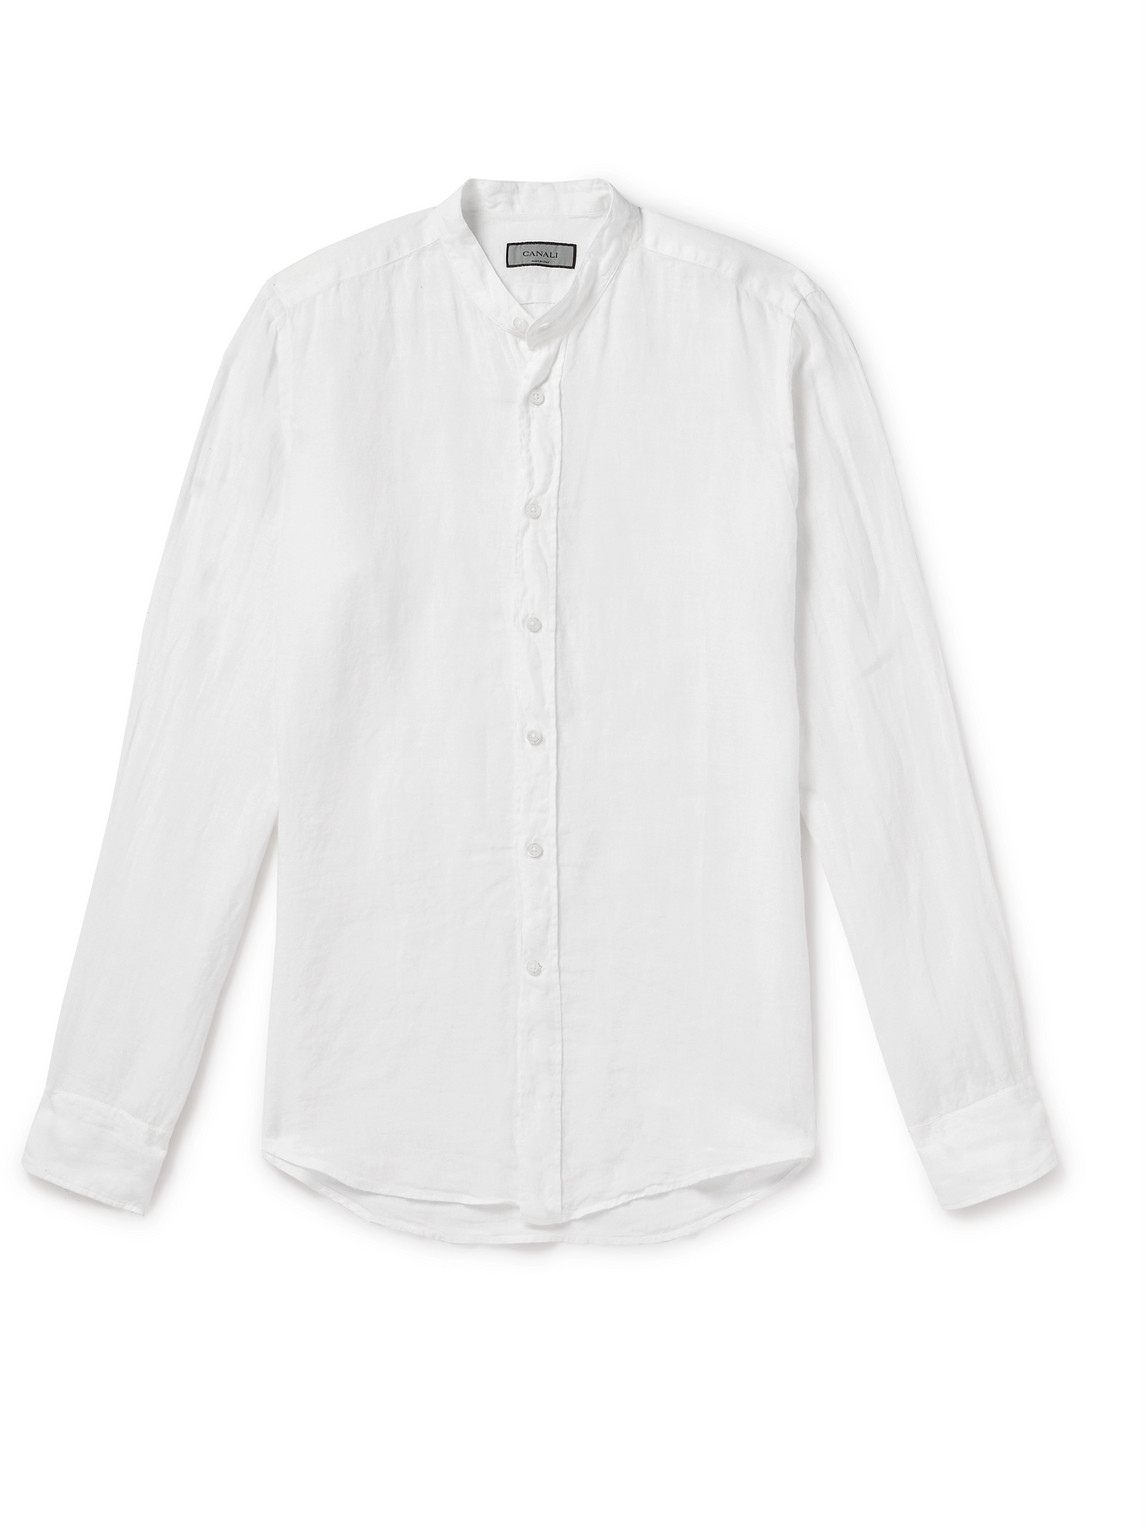 Canali - Grandad-Collar Linen-Gauze Shirt - Men - White - S von Canali